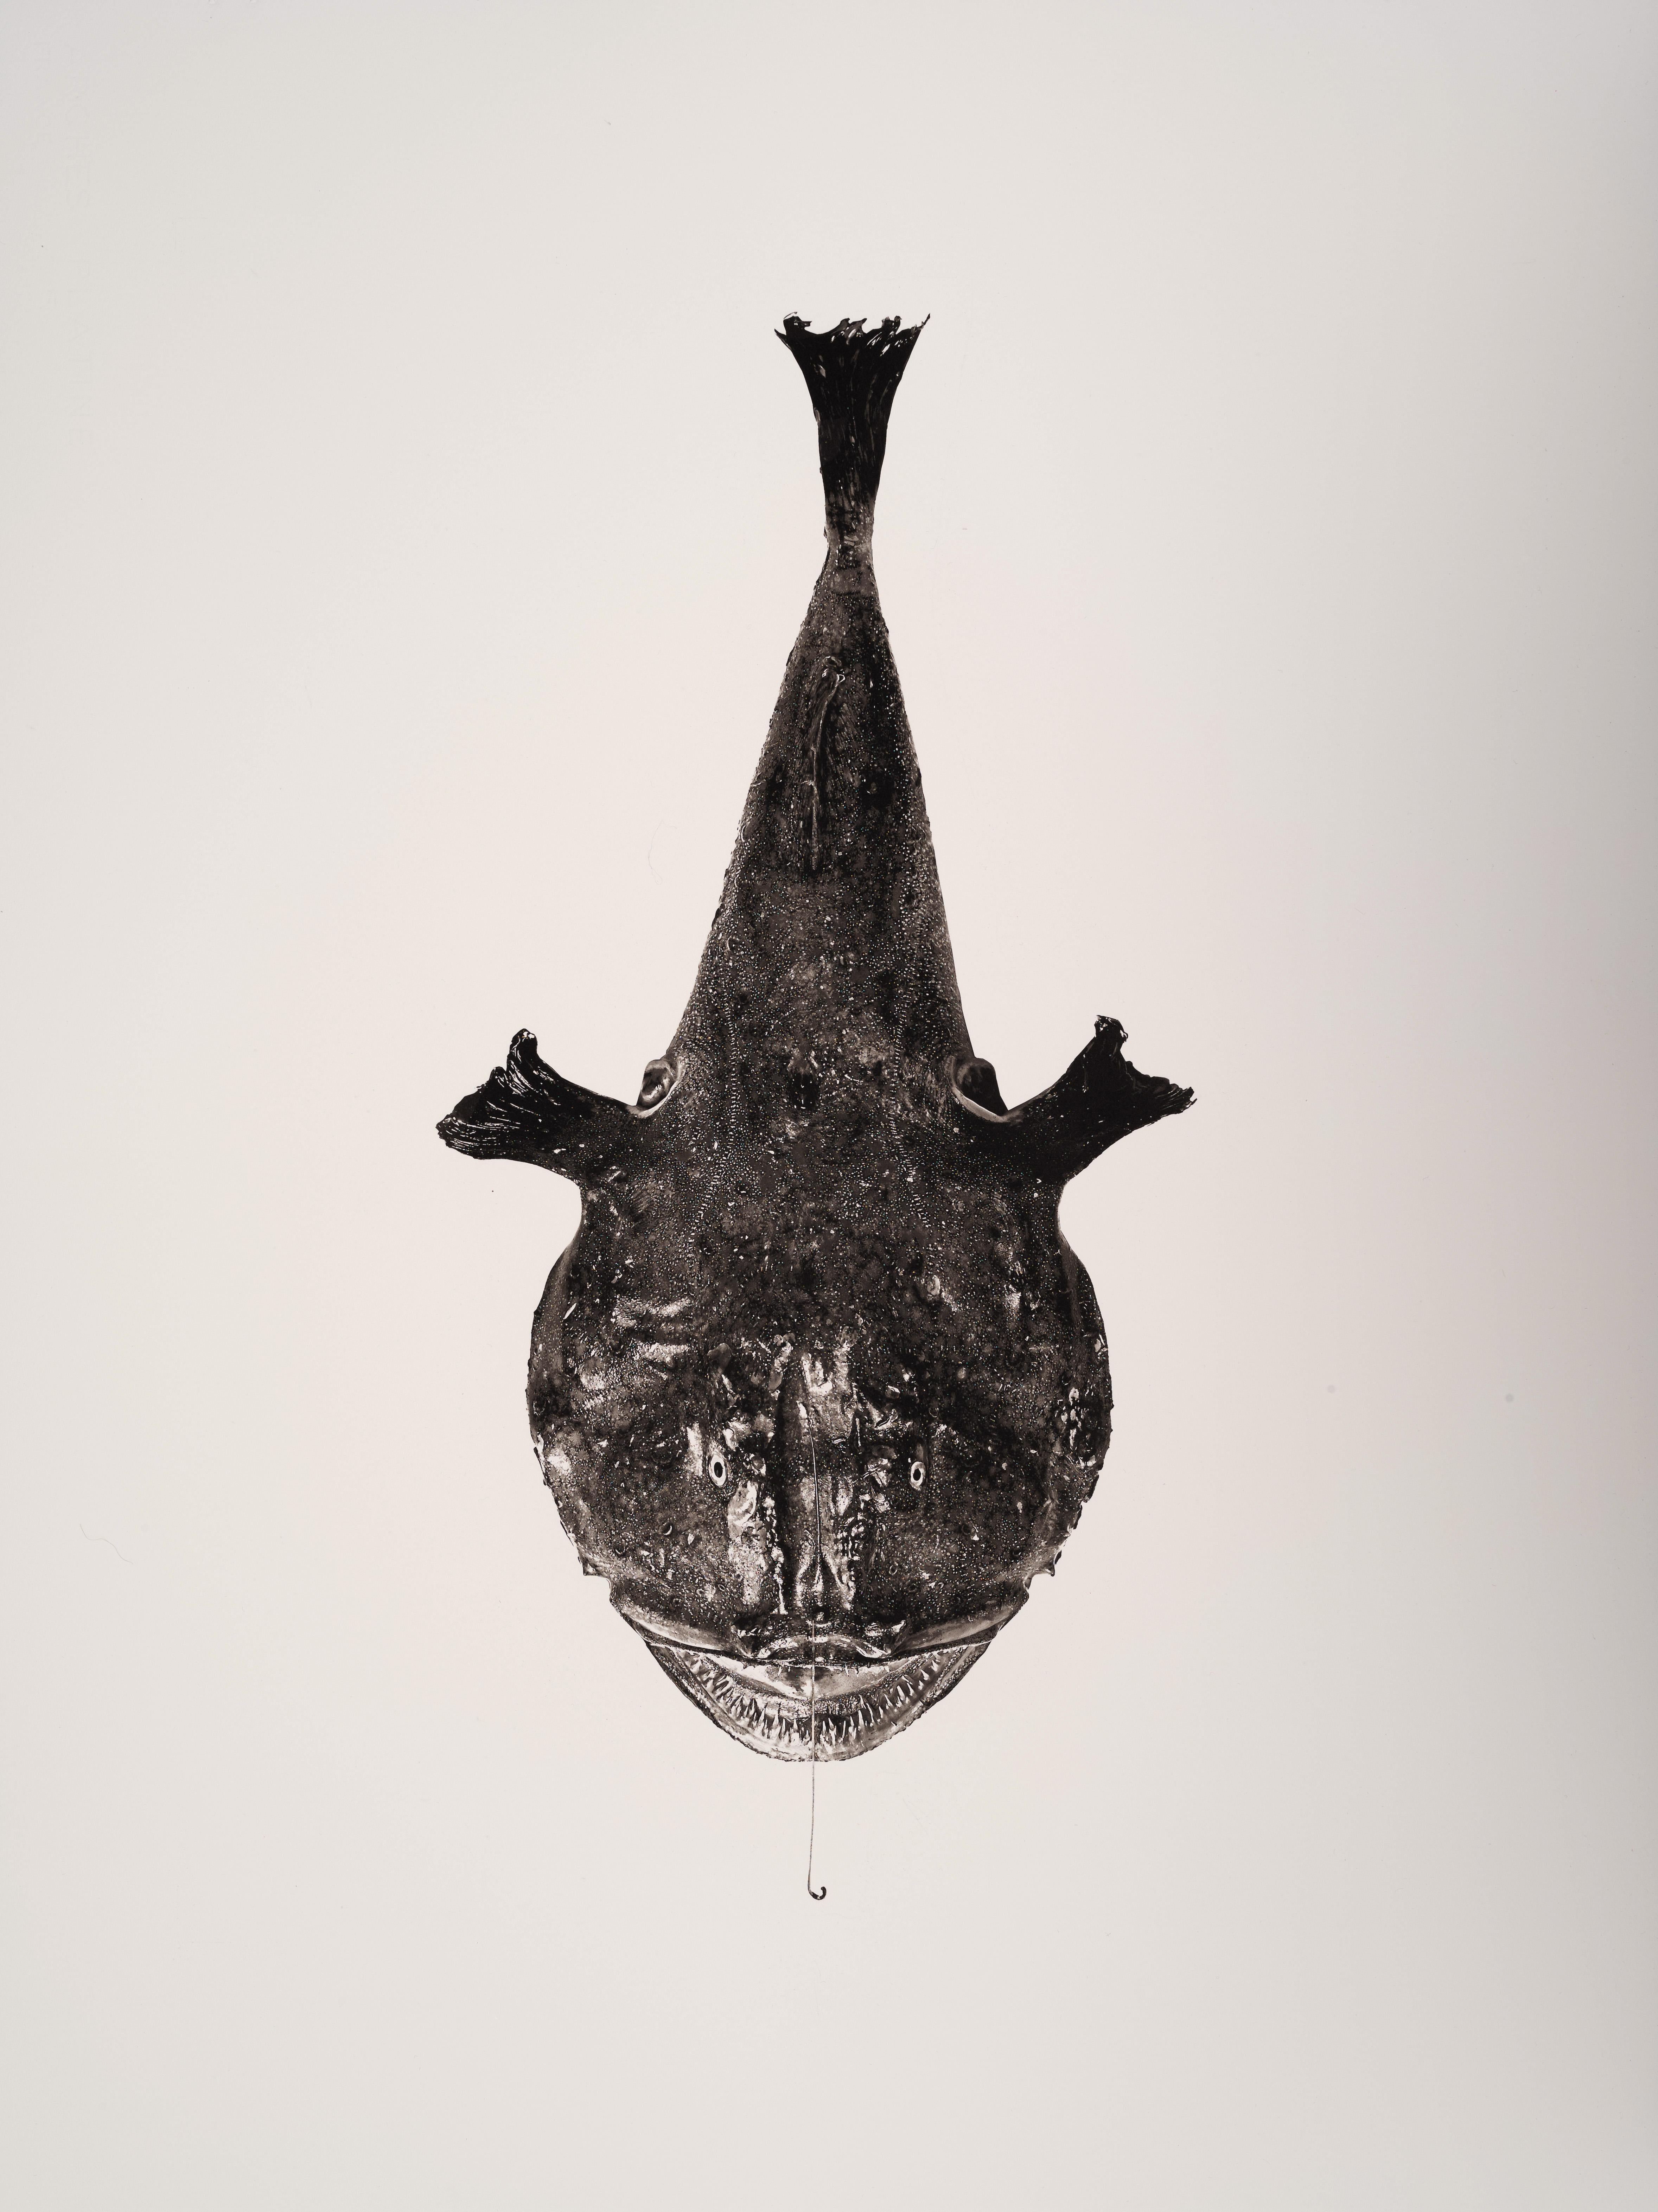 Melanocetus, Platinum Iridium Print, Photography, Contemporary